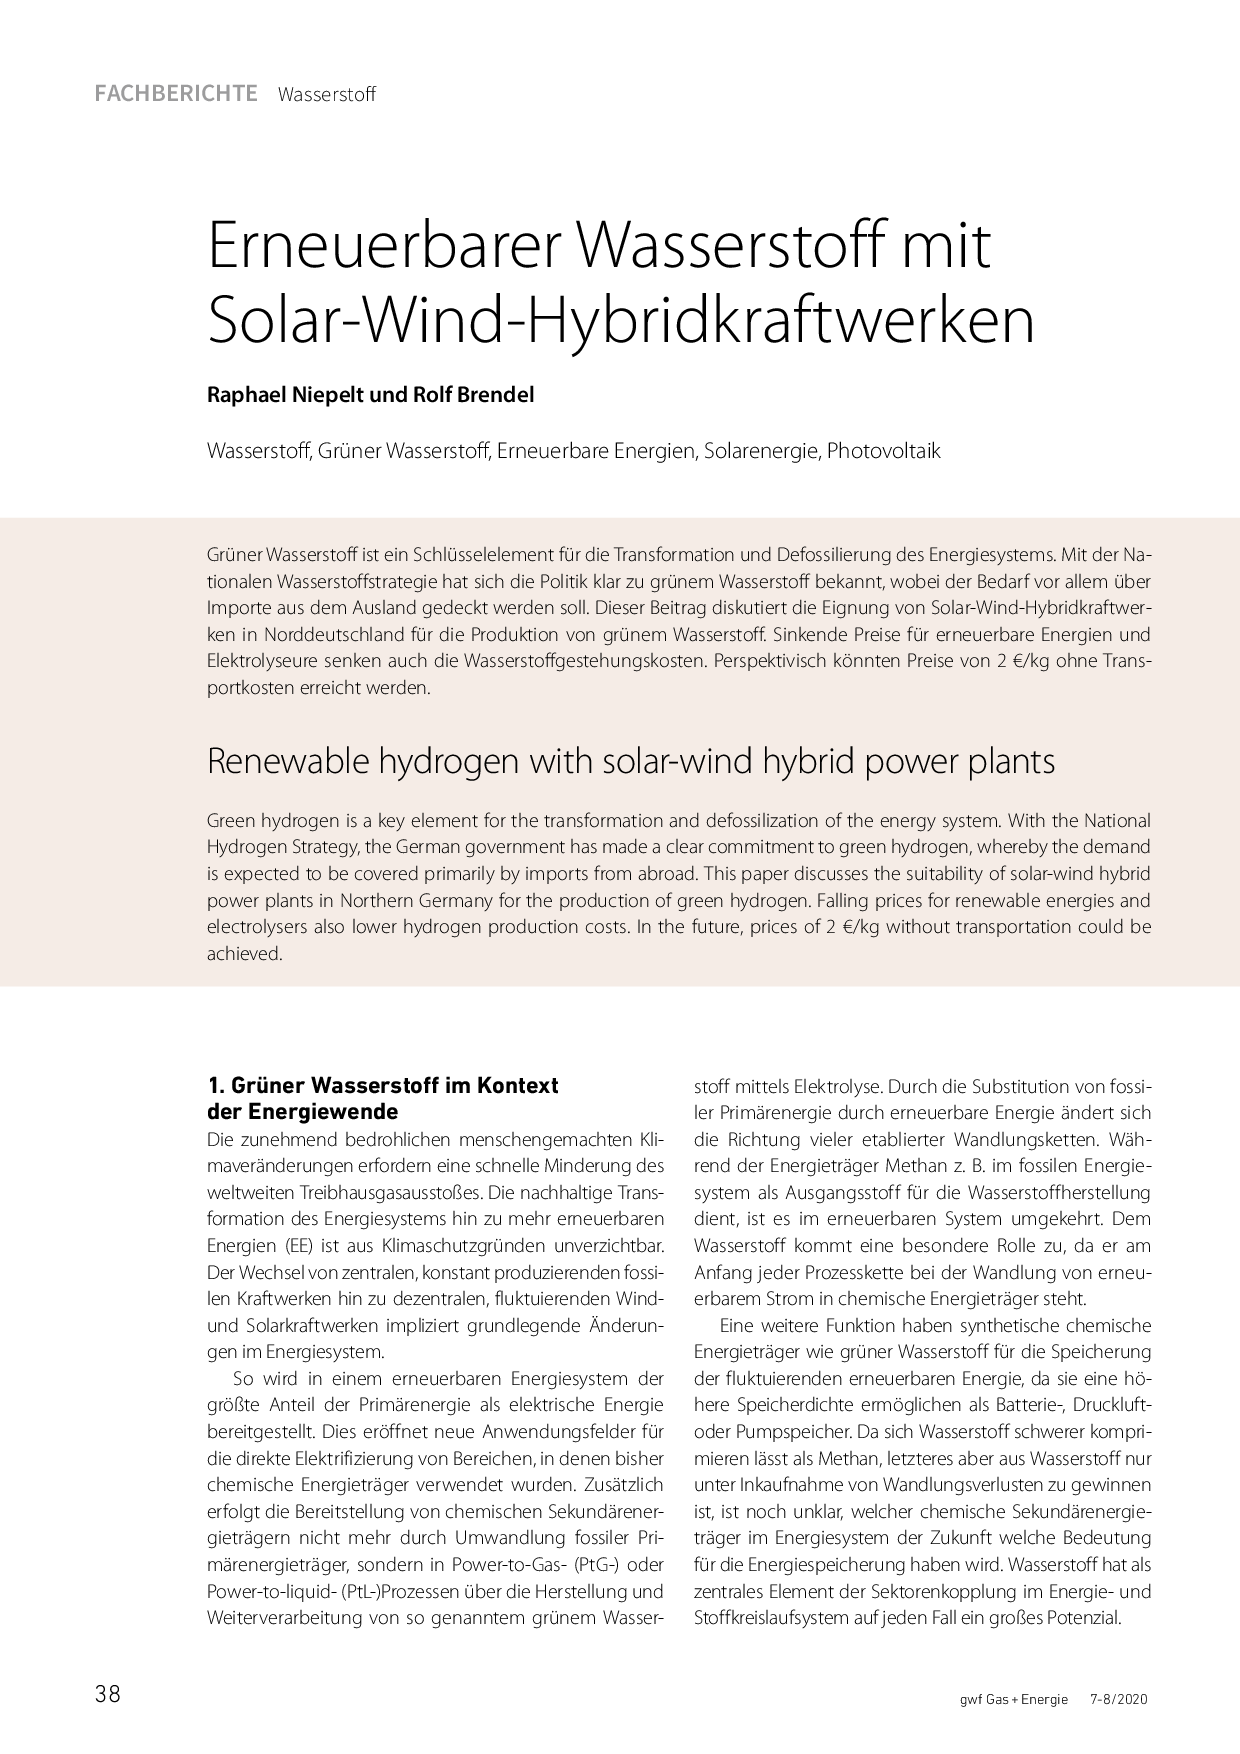 Erneuerbarer Wasserstoff mit Solar-Wind-Hybridkraftwerken